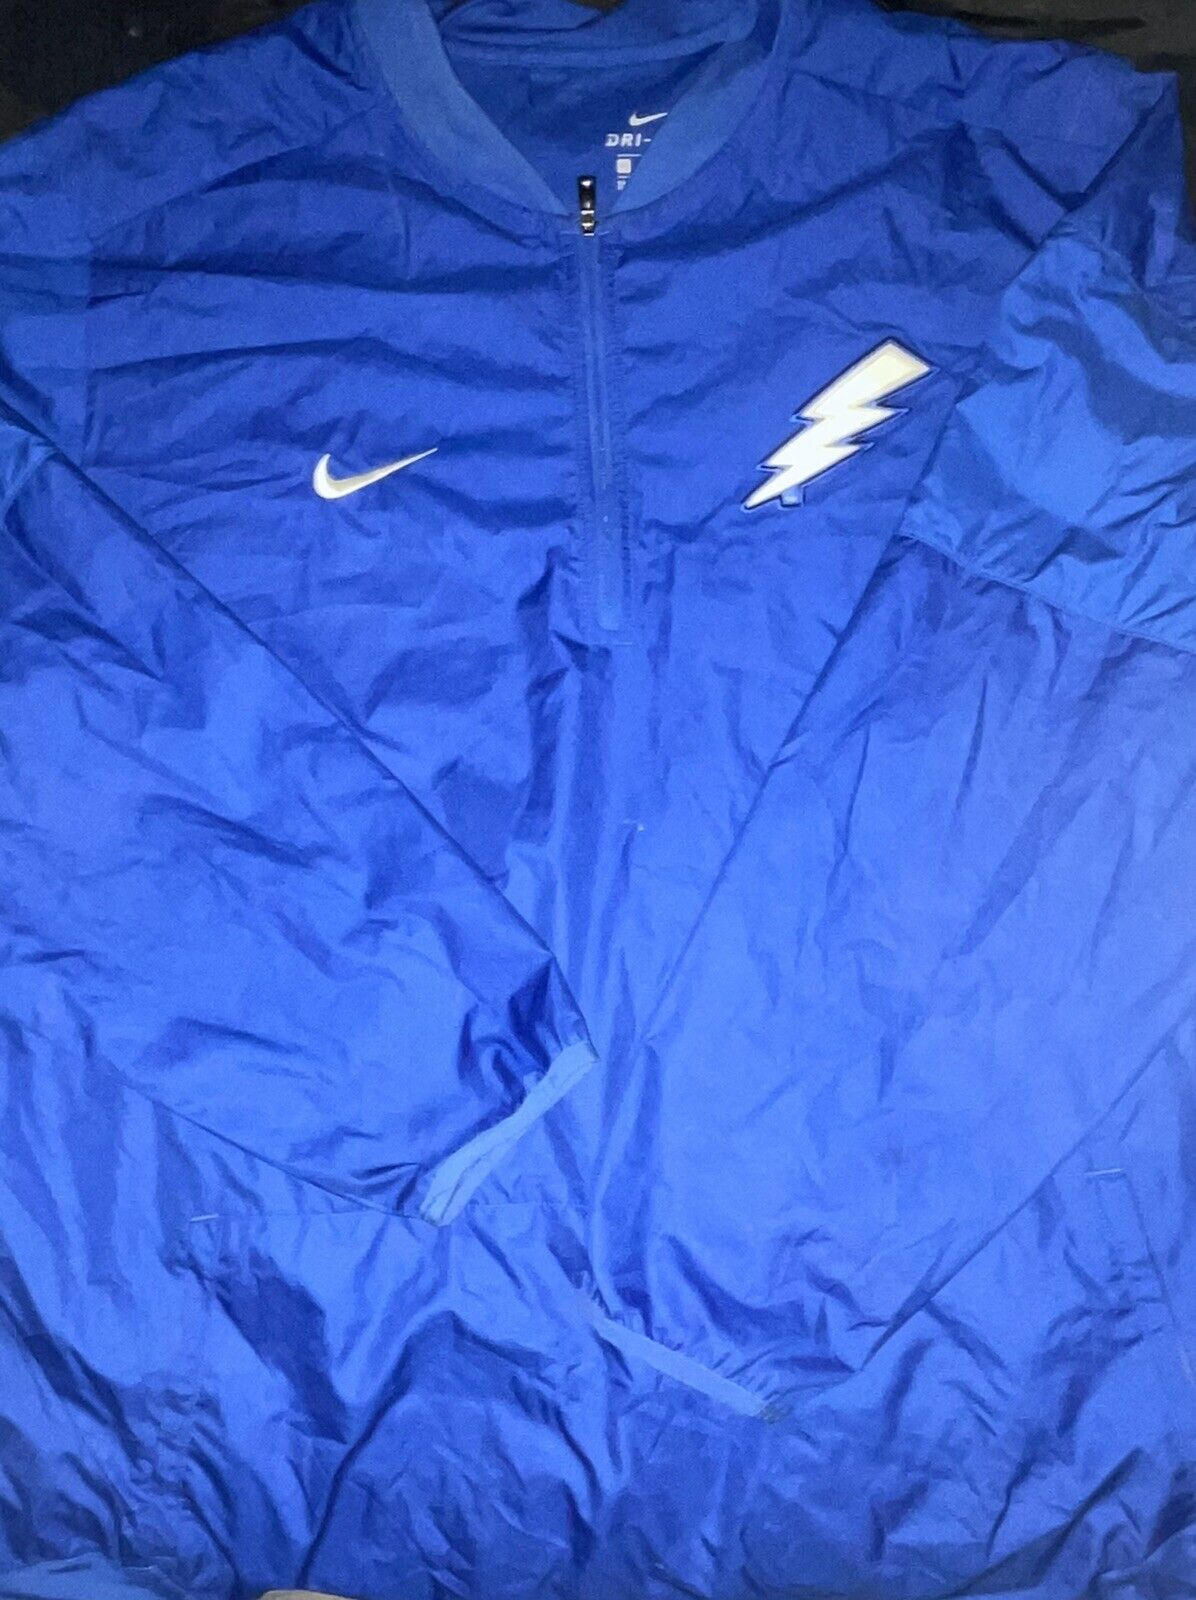 Nike Tampa Bay Lighting Wind Breaker Jacket Size 3xl